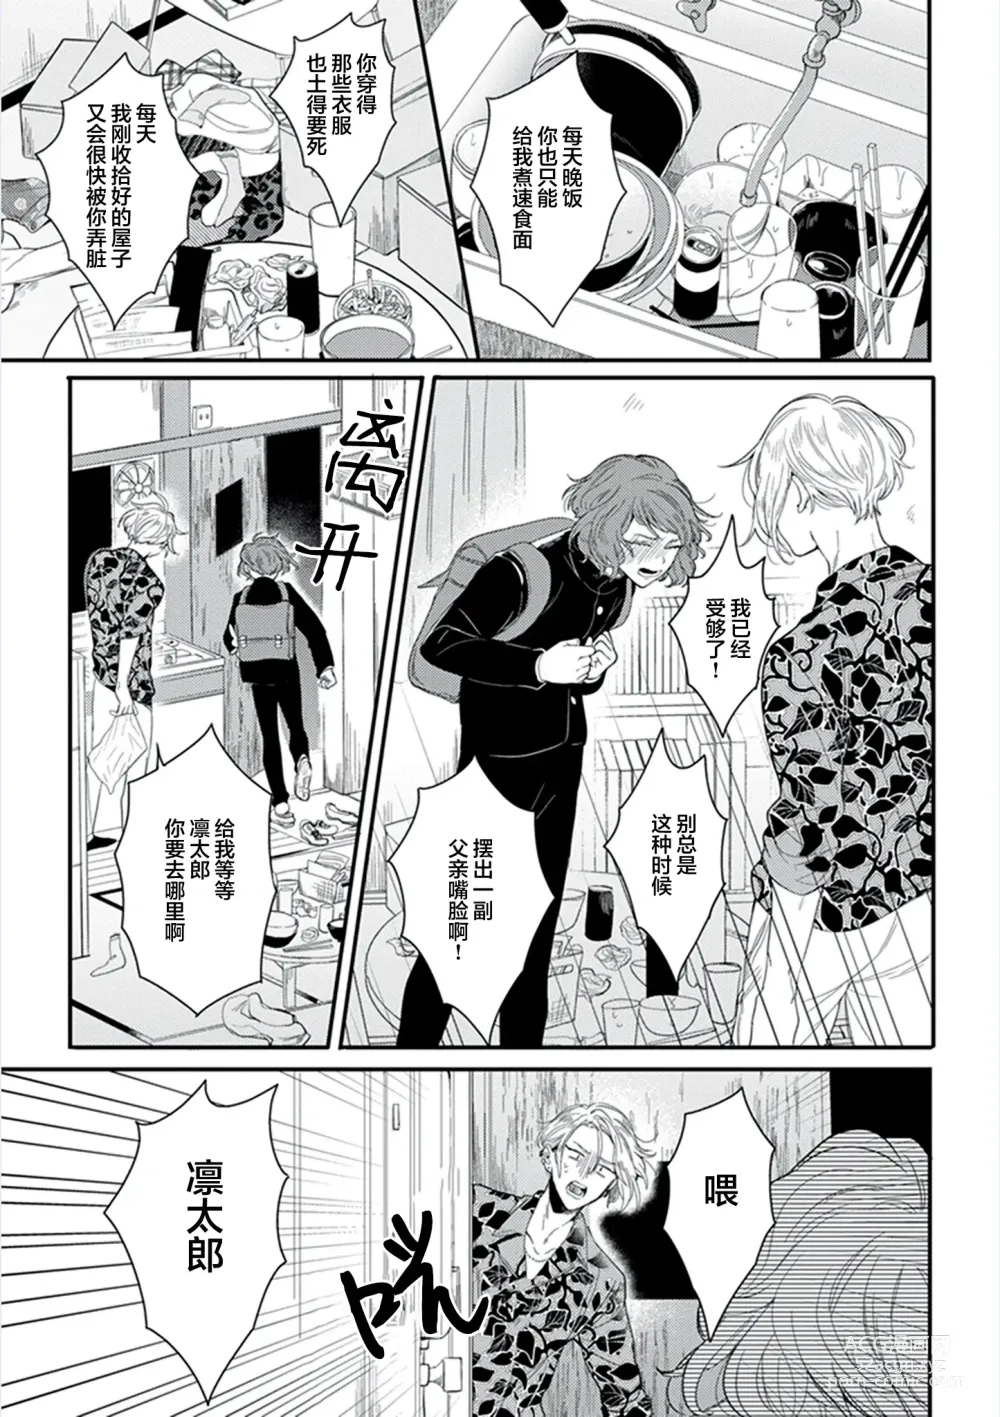 Page 9 of manga 爸爸修行中的二把手被糟糕的男人盯上了